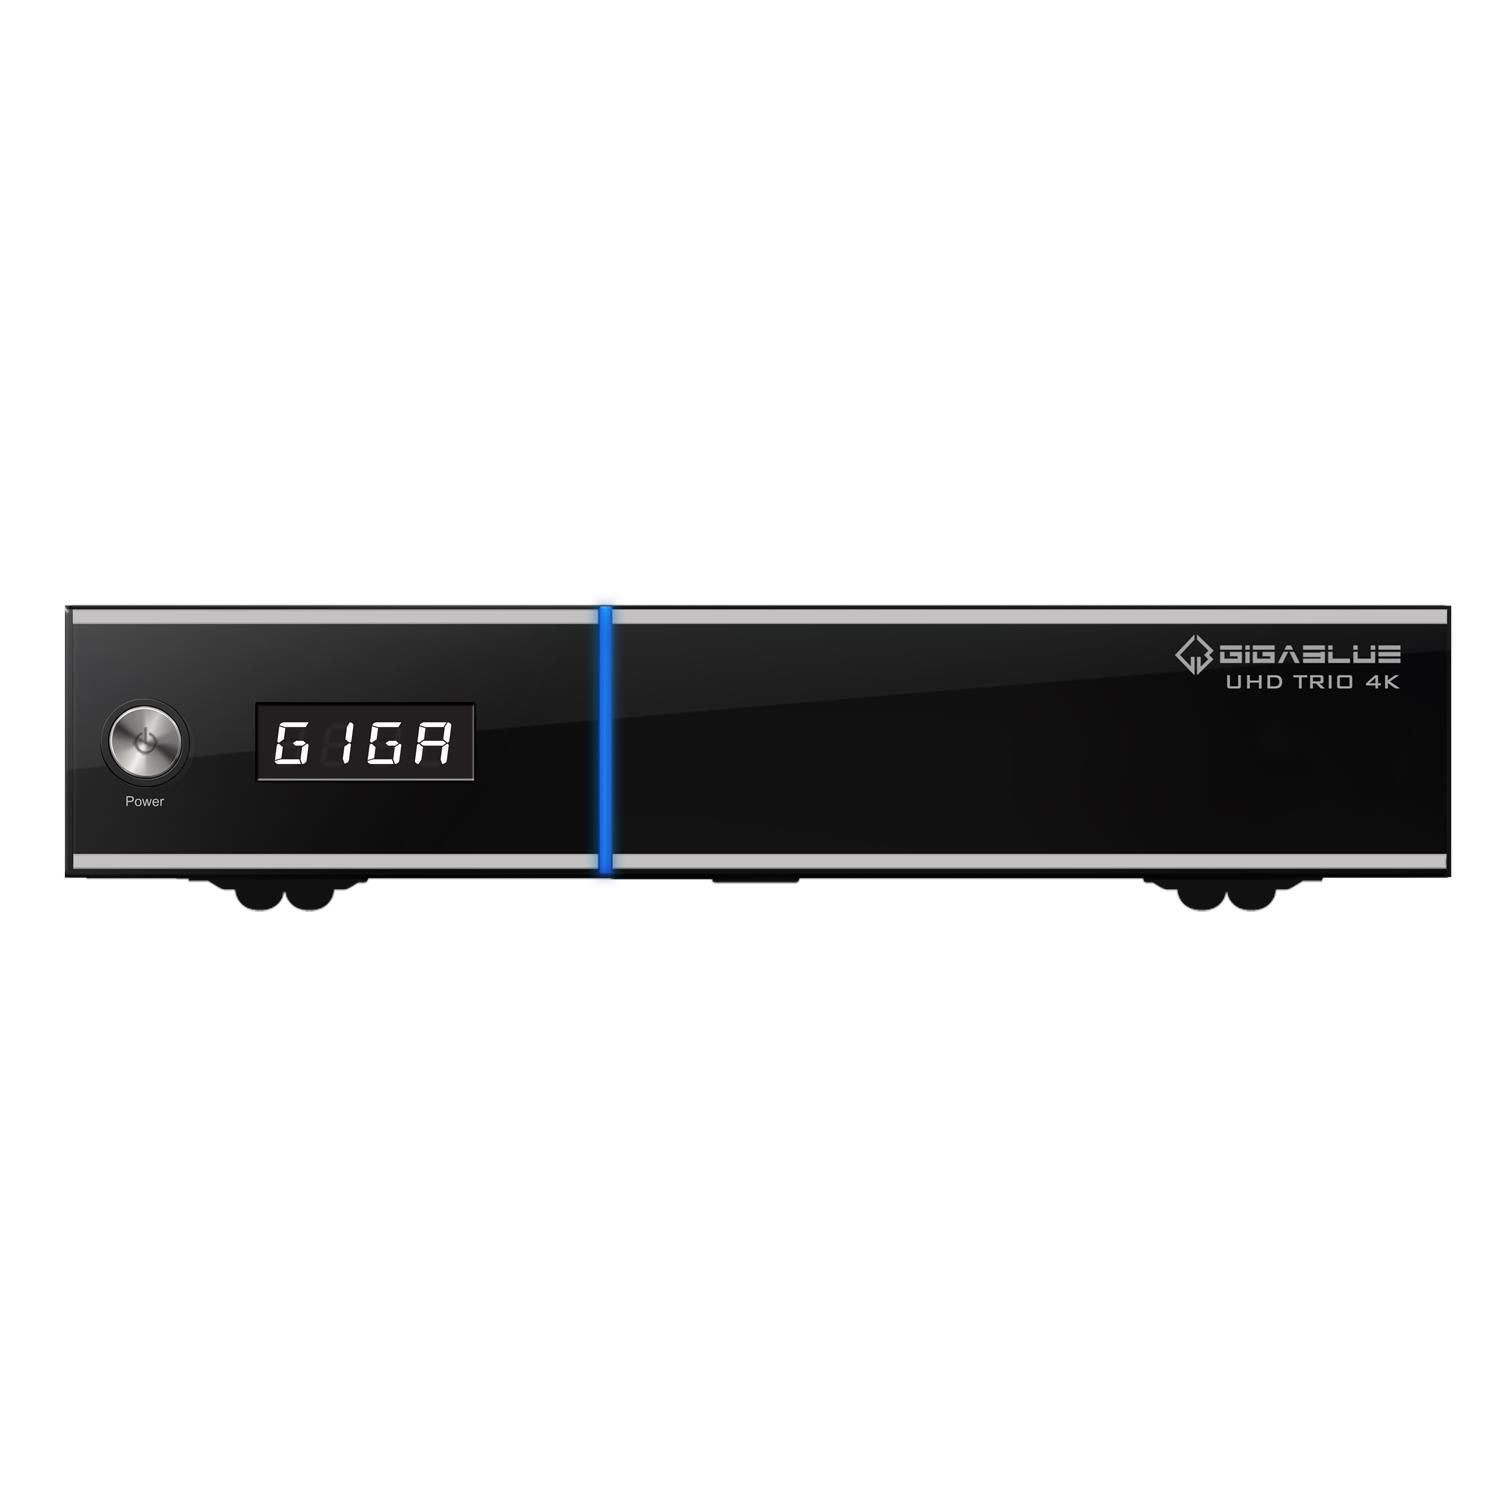 GIGABLUE UHD TRIO 4K SAT-Receiver schwarz) (HDTV, DVB-S2, PVR-Funktion=optional, DVB-S, DVB-T, Twin DVB-C2, DVB-C, Tuner